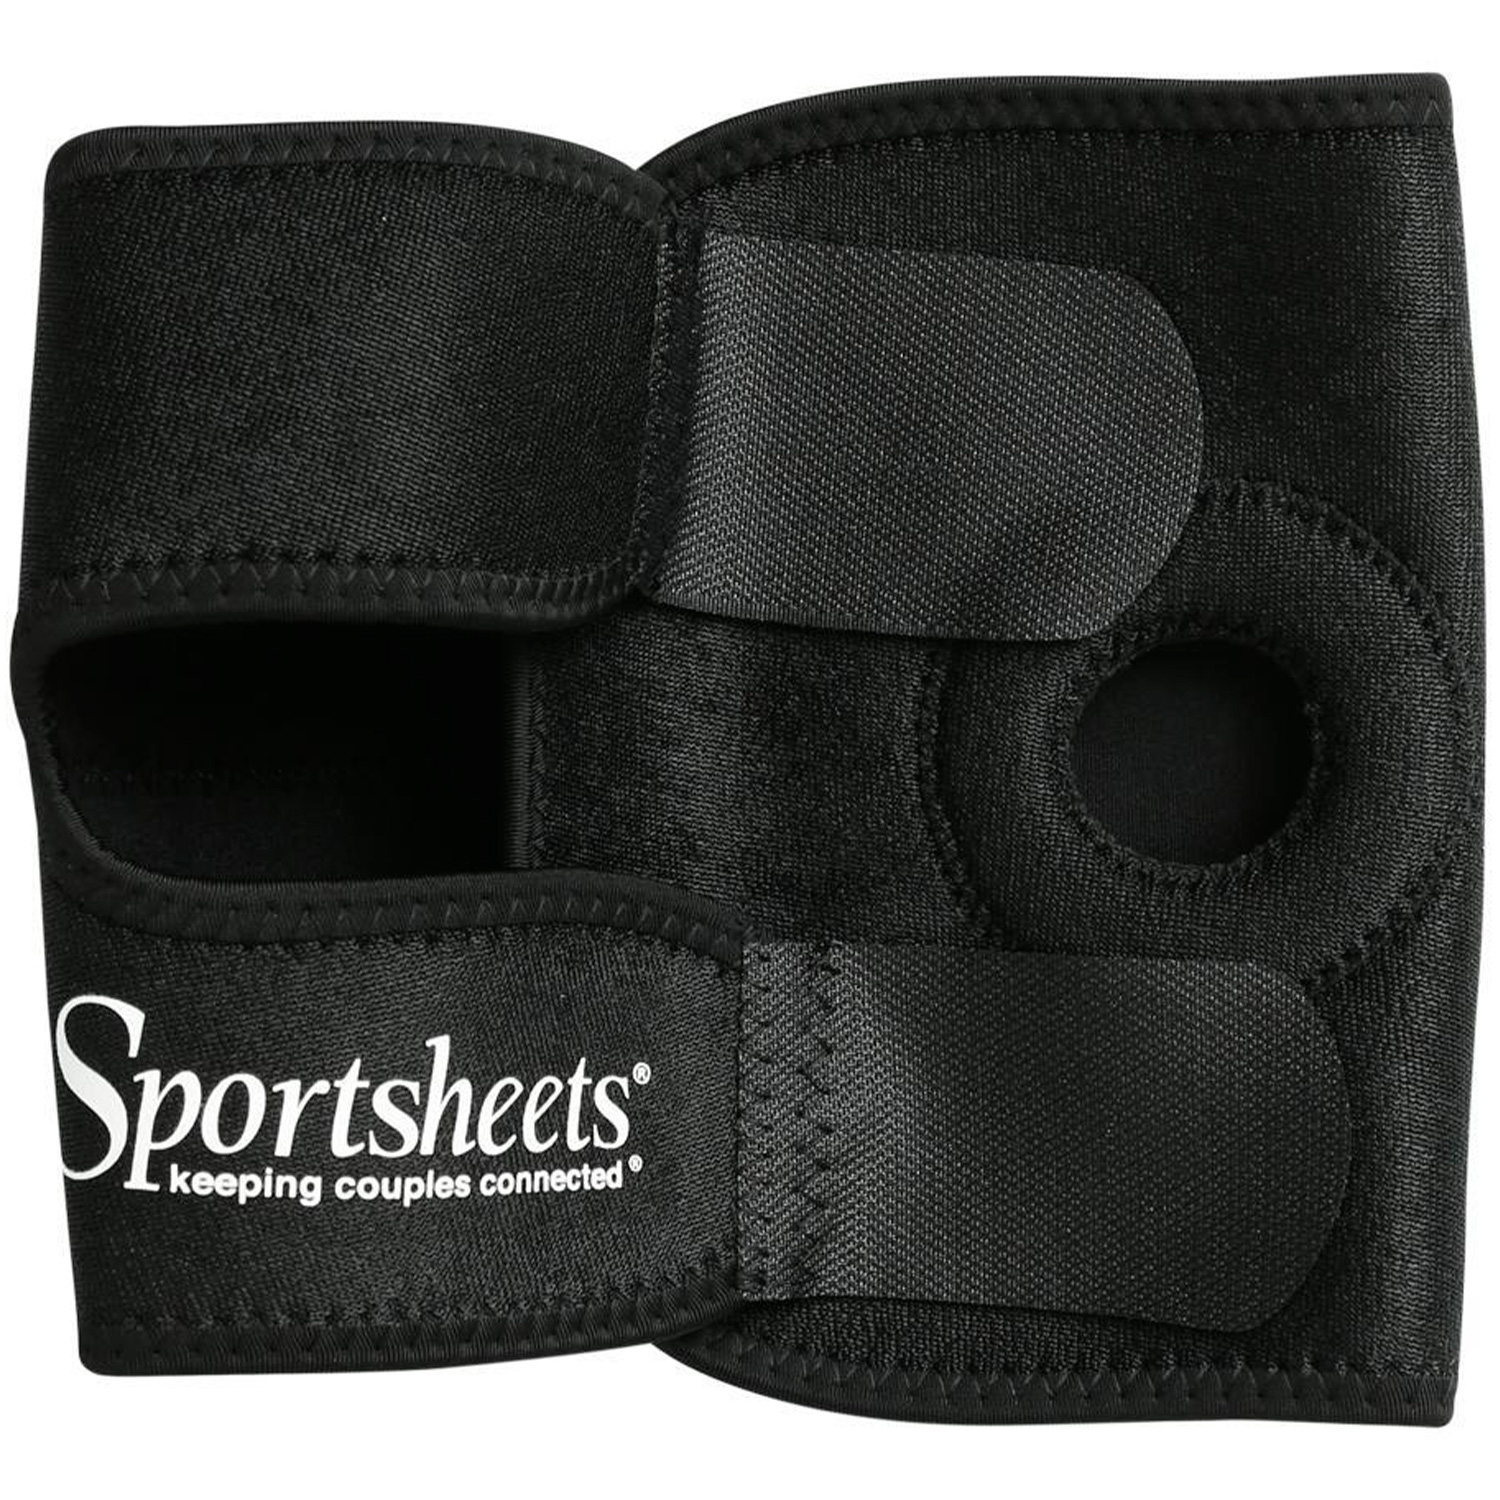 Sportsheets Strap-on Harness til Lår - Black